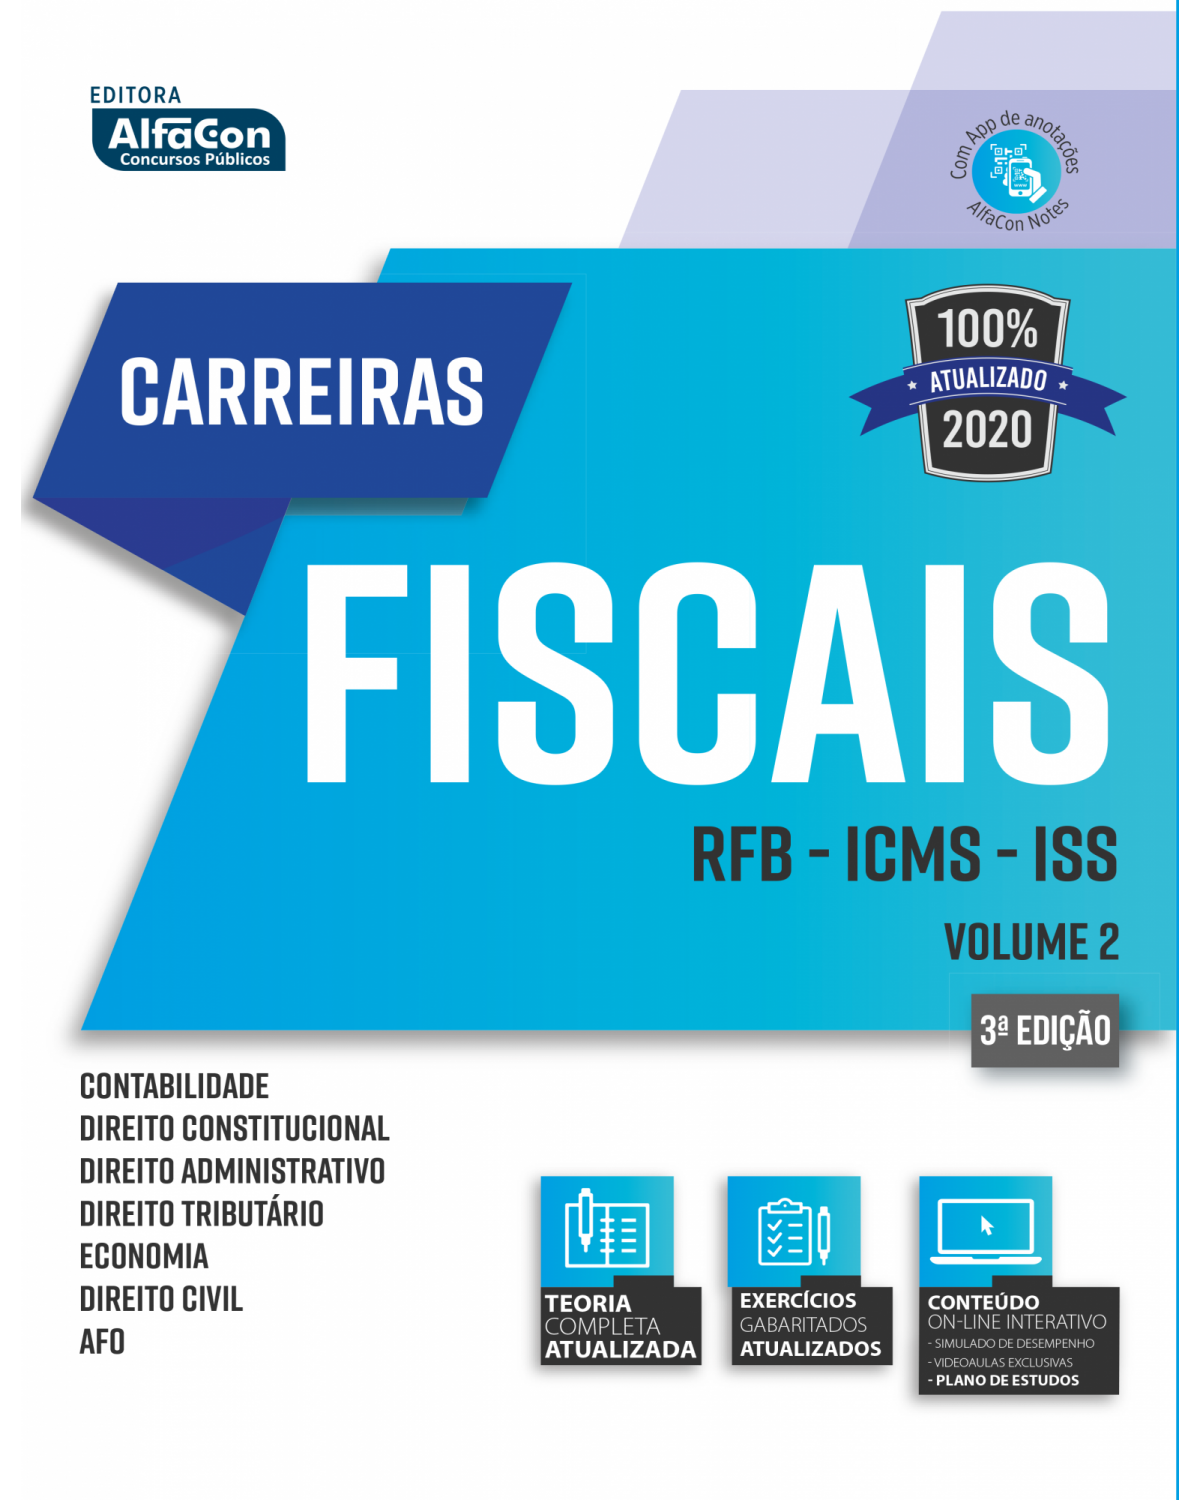 Carreiras fiscais 2020 - Volume 2: Receita Federal do Brasil - ICMS - ISS - 3ª Edição | 2020